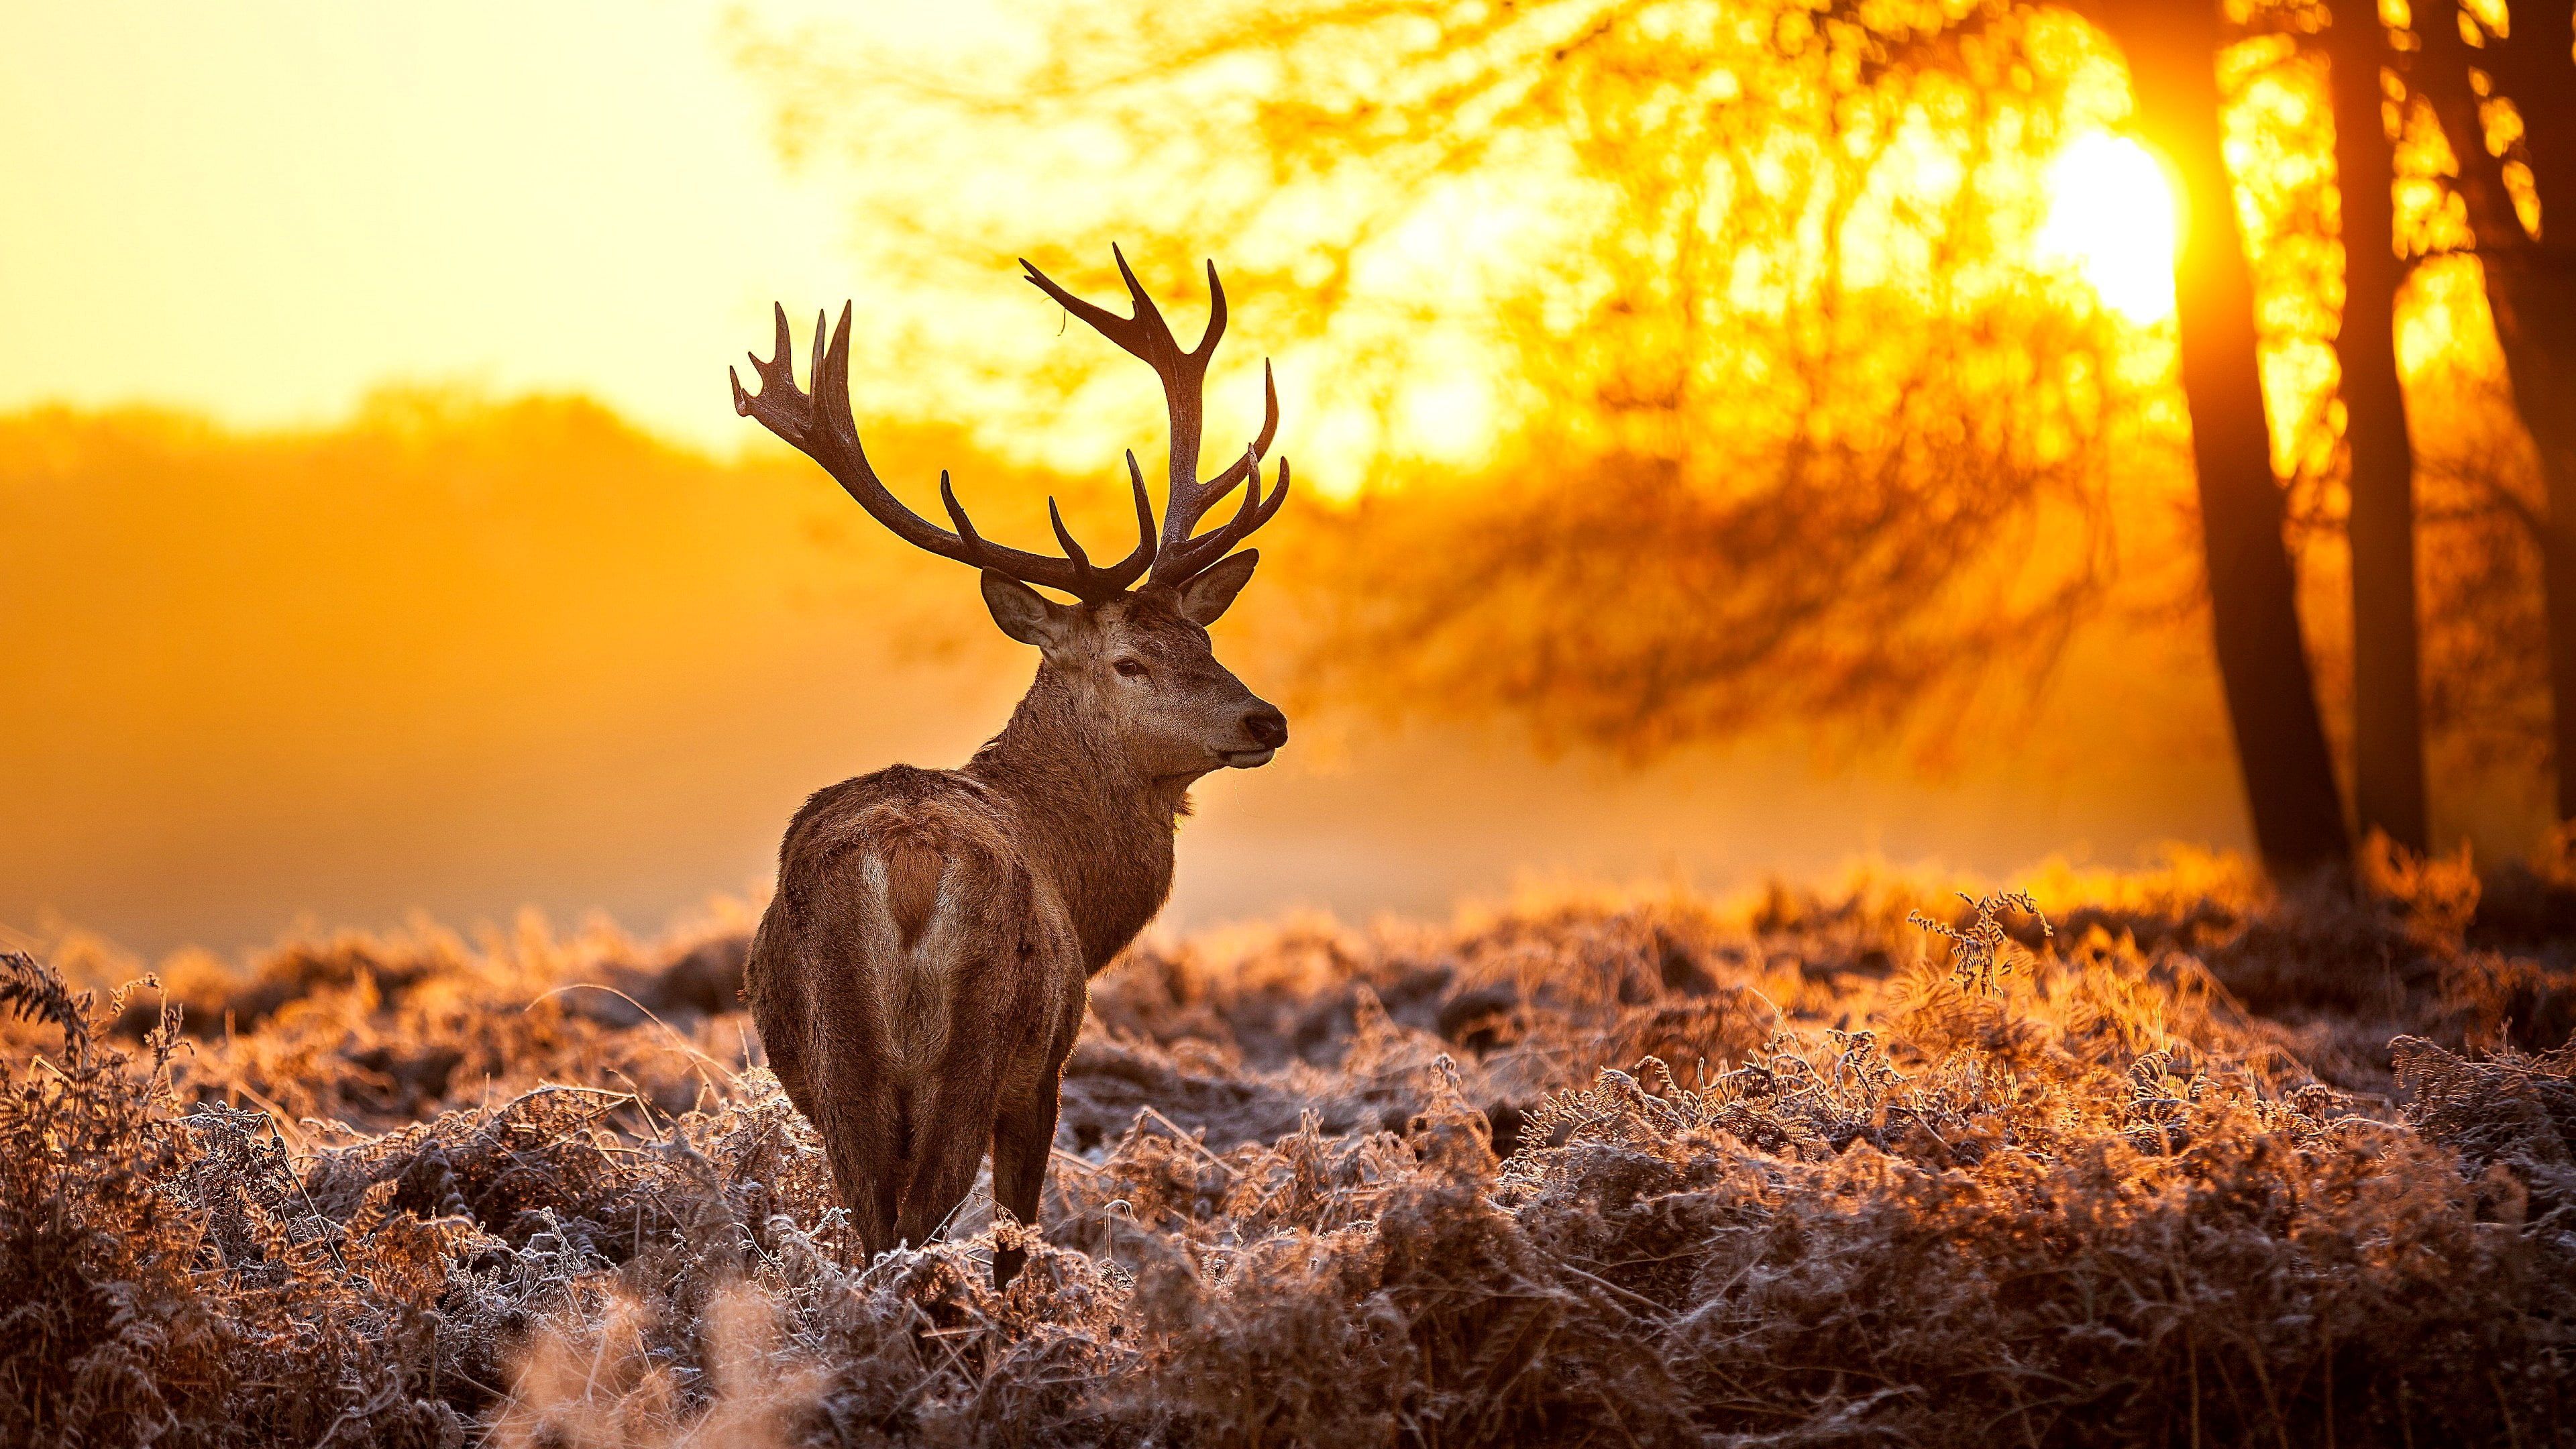 deer #stag K #wallpaper #hdwallpaper #desktop. Red deer, Deer, Nature animals